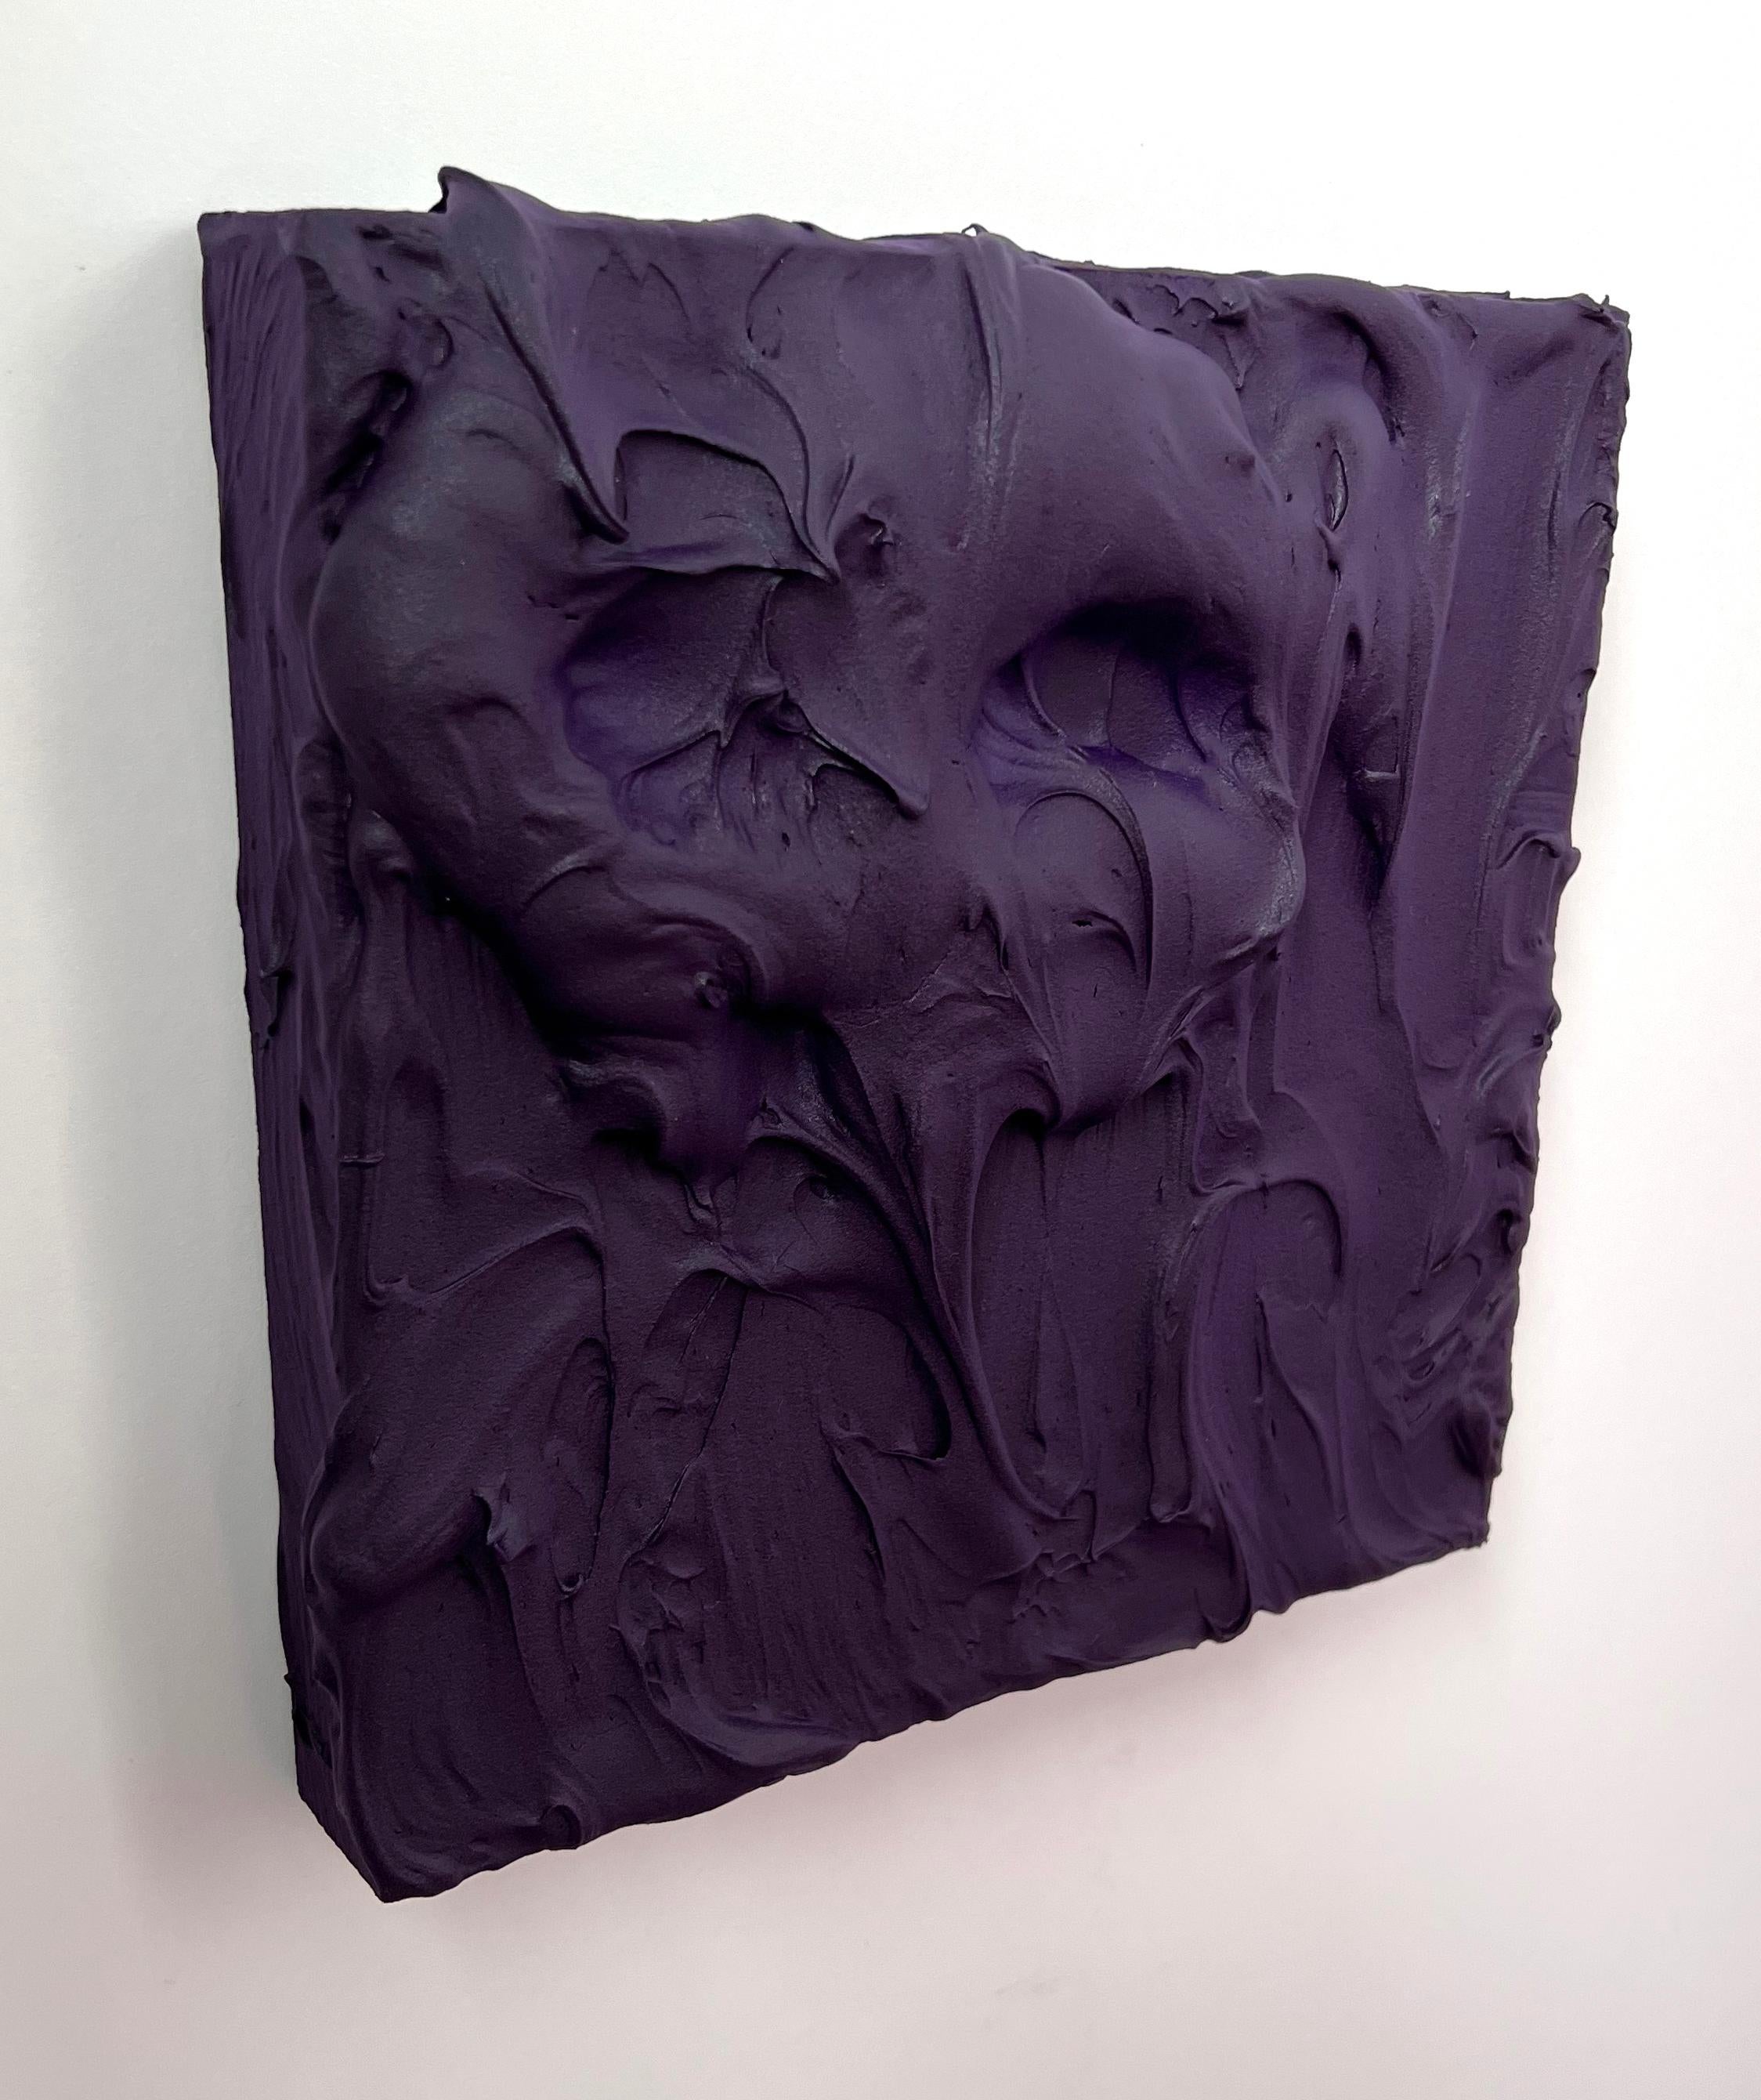 Royal Purple Excess (thick impasto painting monochrome Pop-Art quadratisches Design) (Braun), Abstract Sculpture, von Chloe Hedden